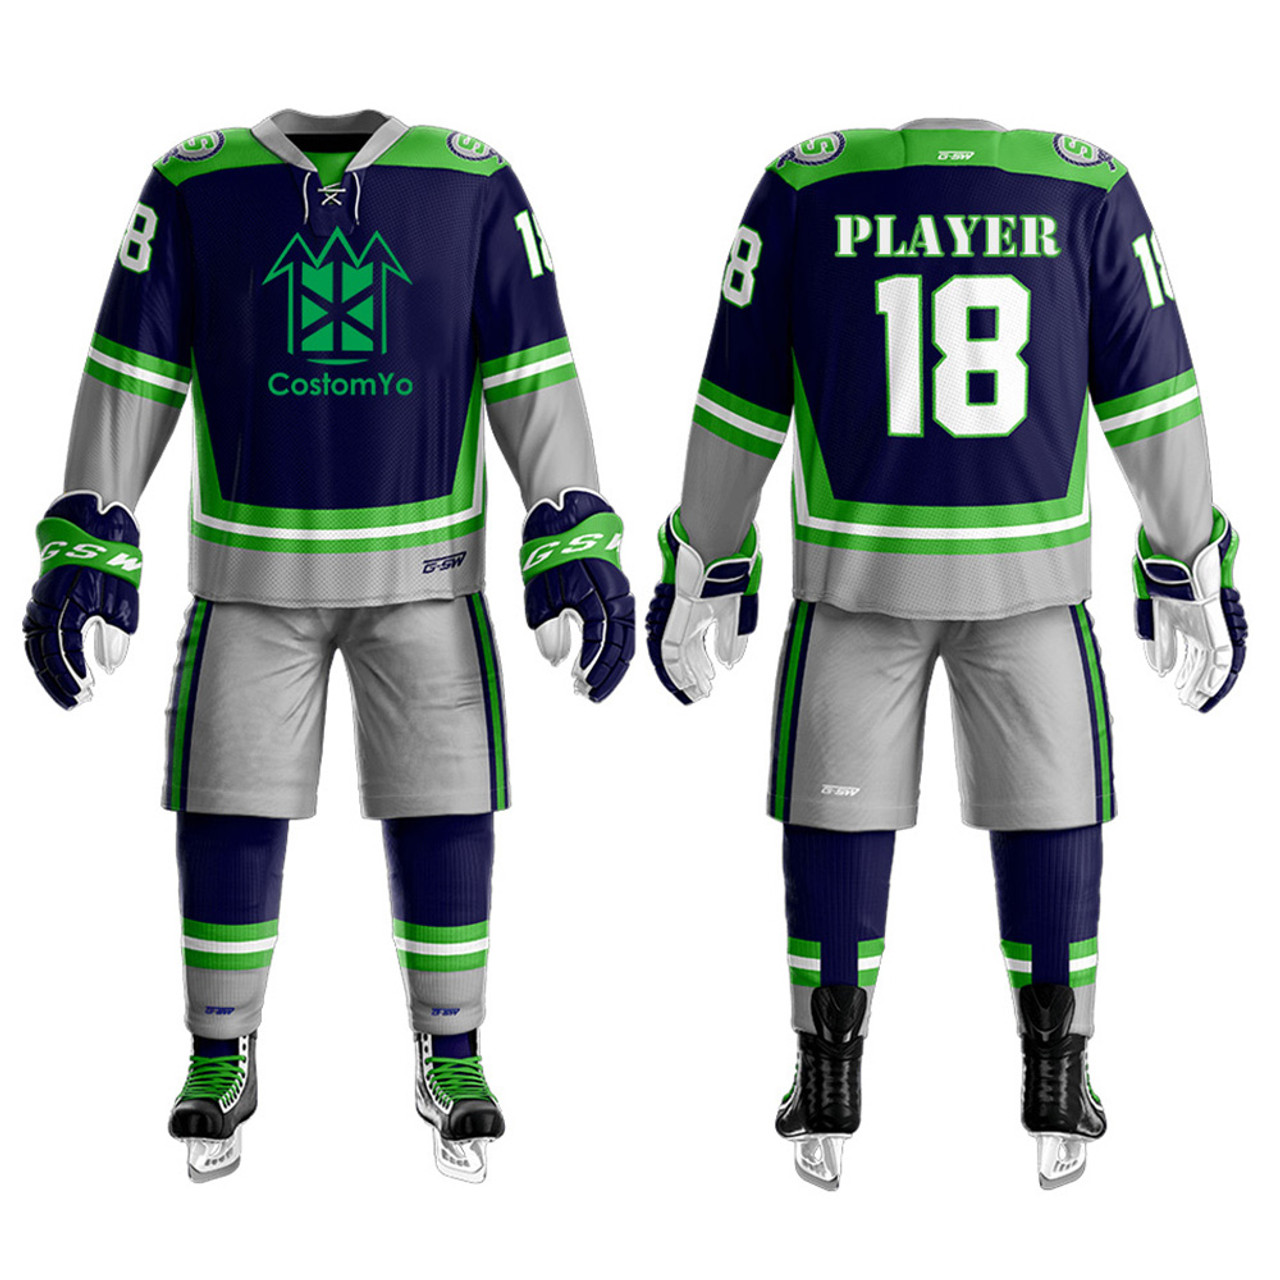 Full Custom Ice Hockey Uniform (Jersey + Pant + Socks) - For Men